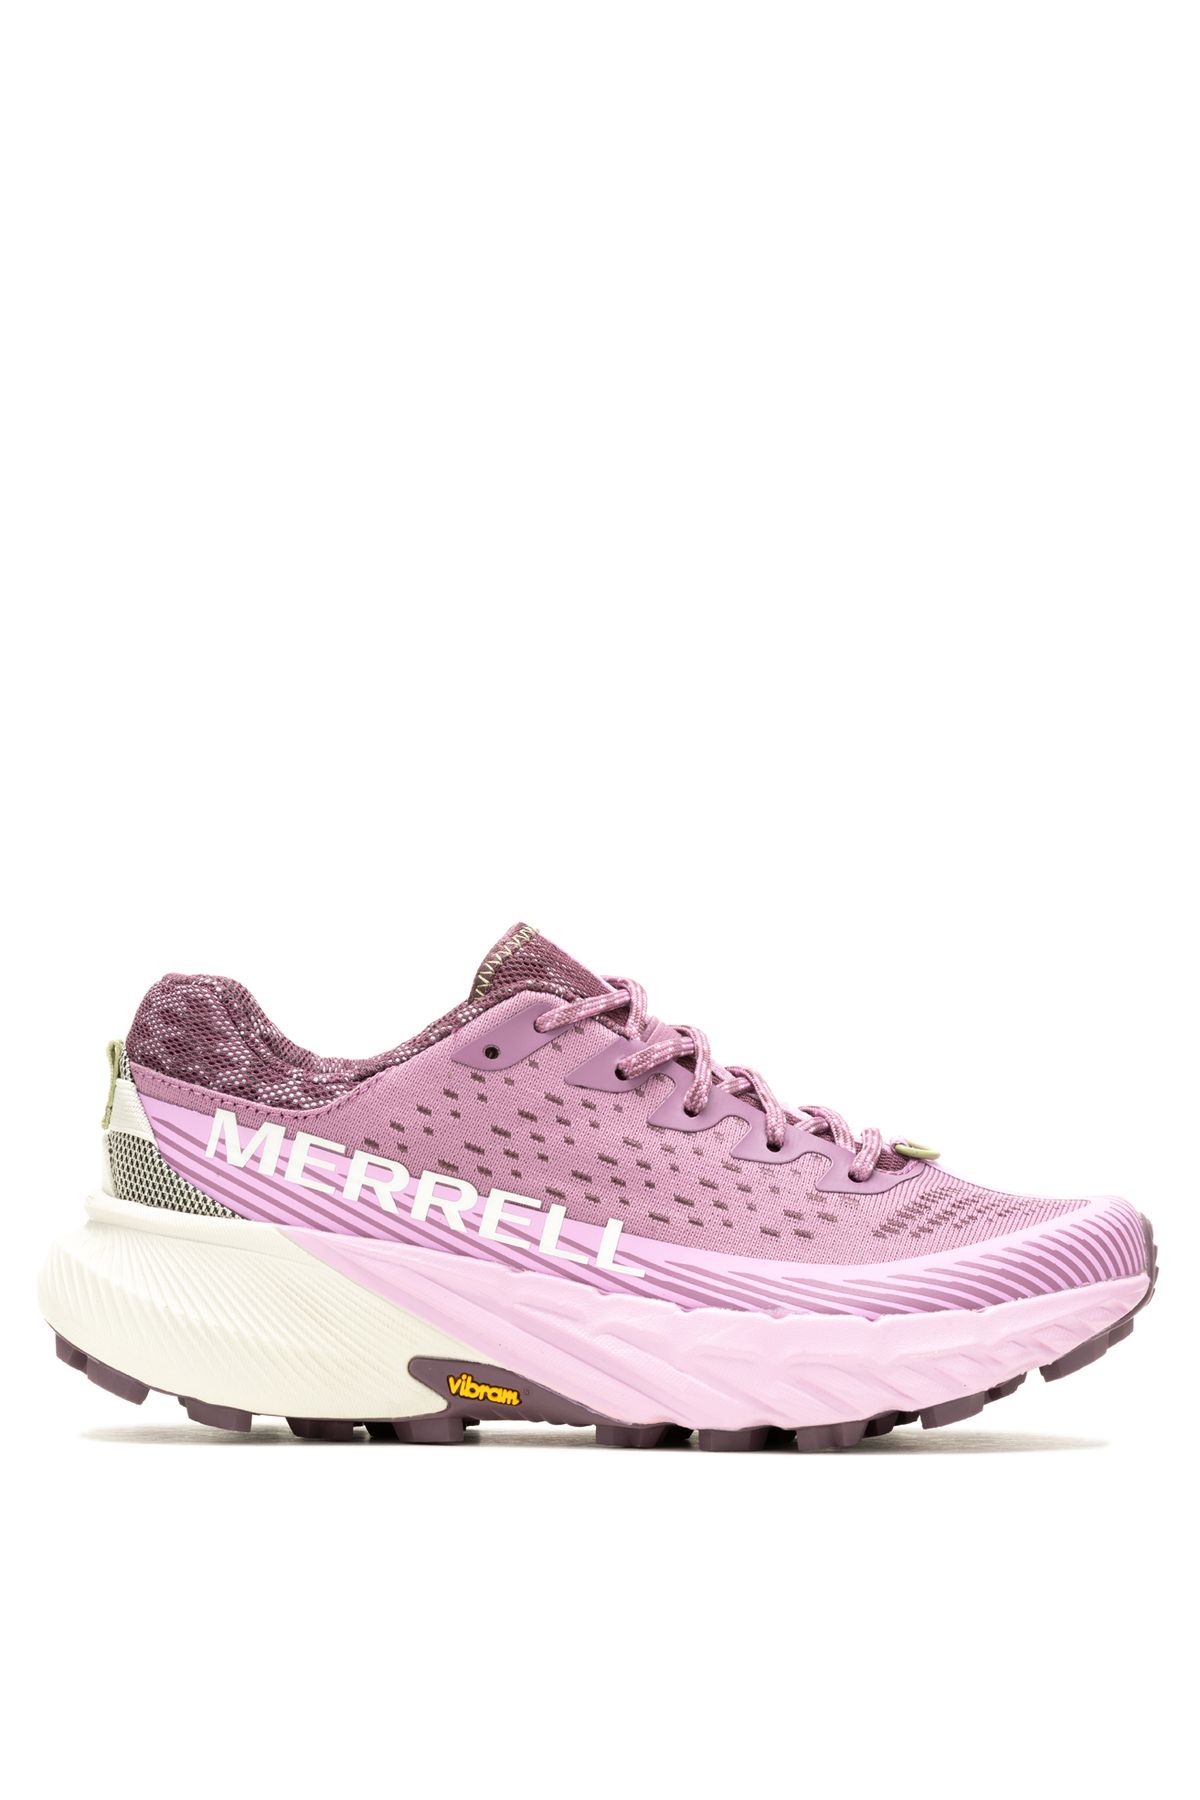 Merrell Mor Kadın Koşu Ayakkabısı J068170_AGILITY PEAK 5